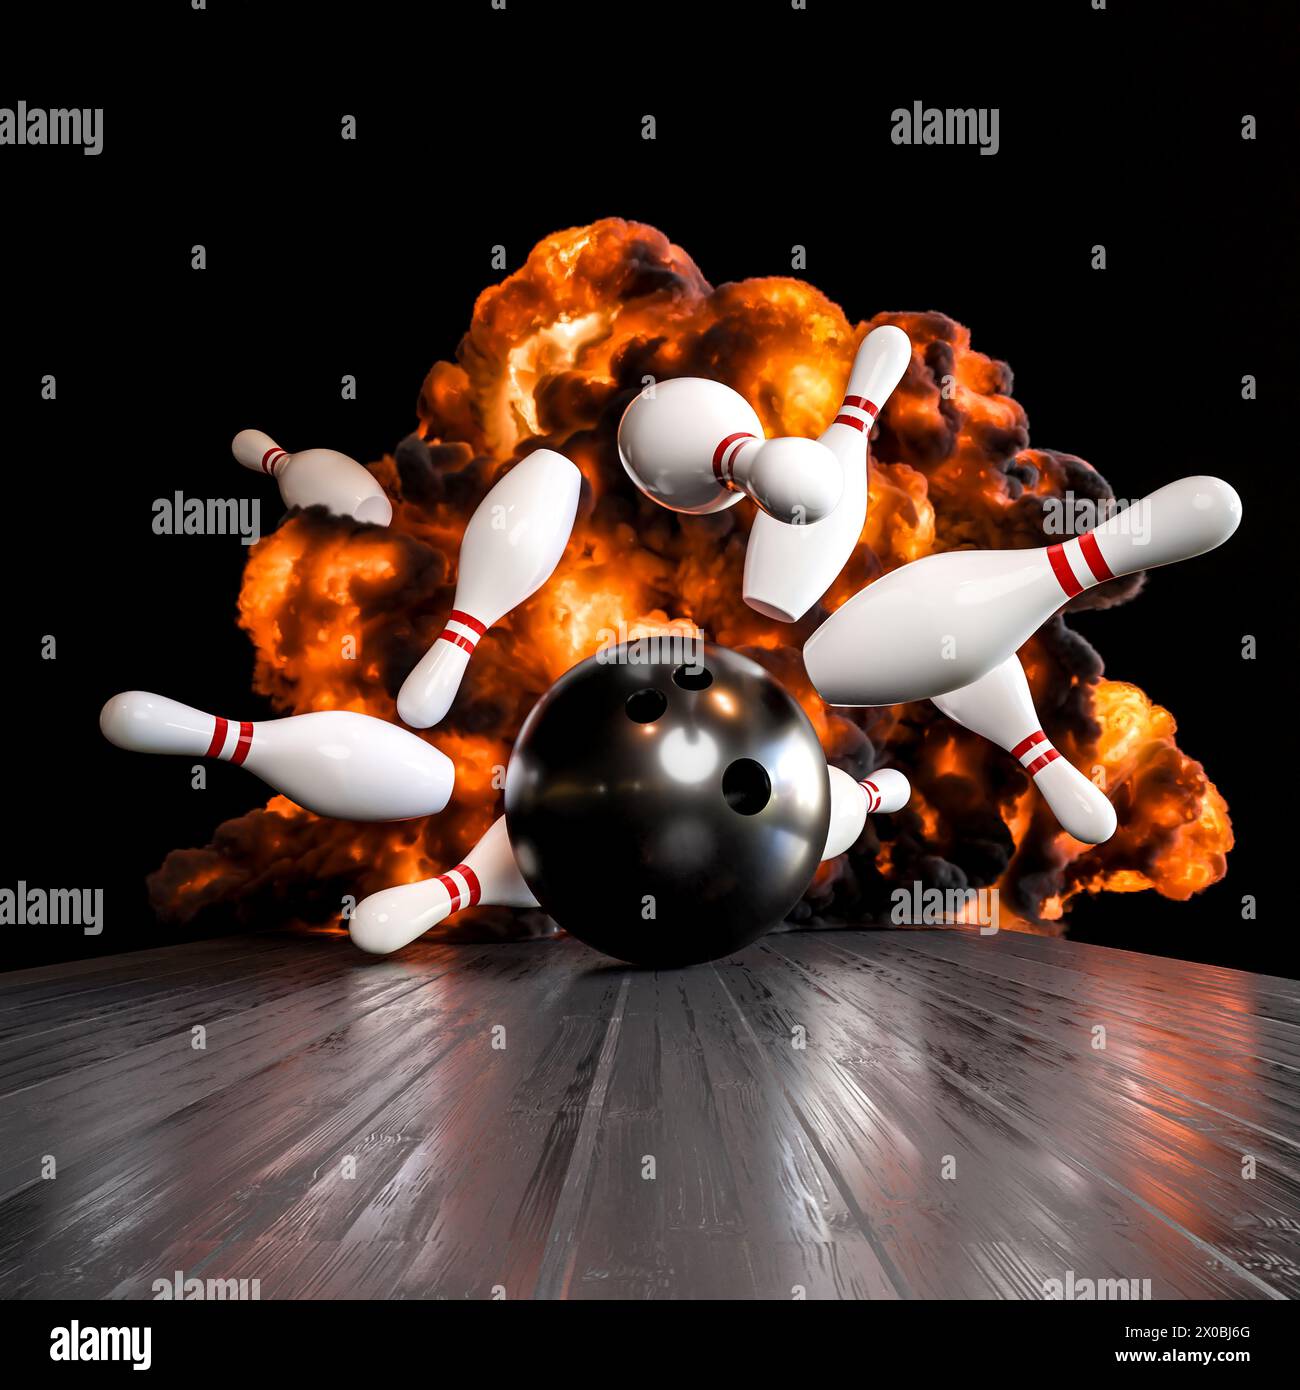 illustration 3d d'une boule de bowling frappant des épingles avec un fond explosif Banque D'Images